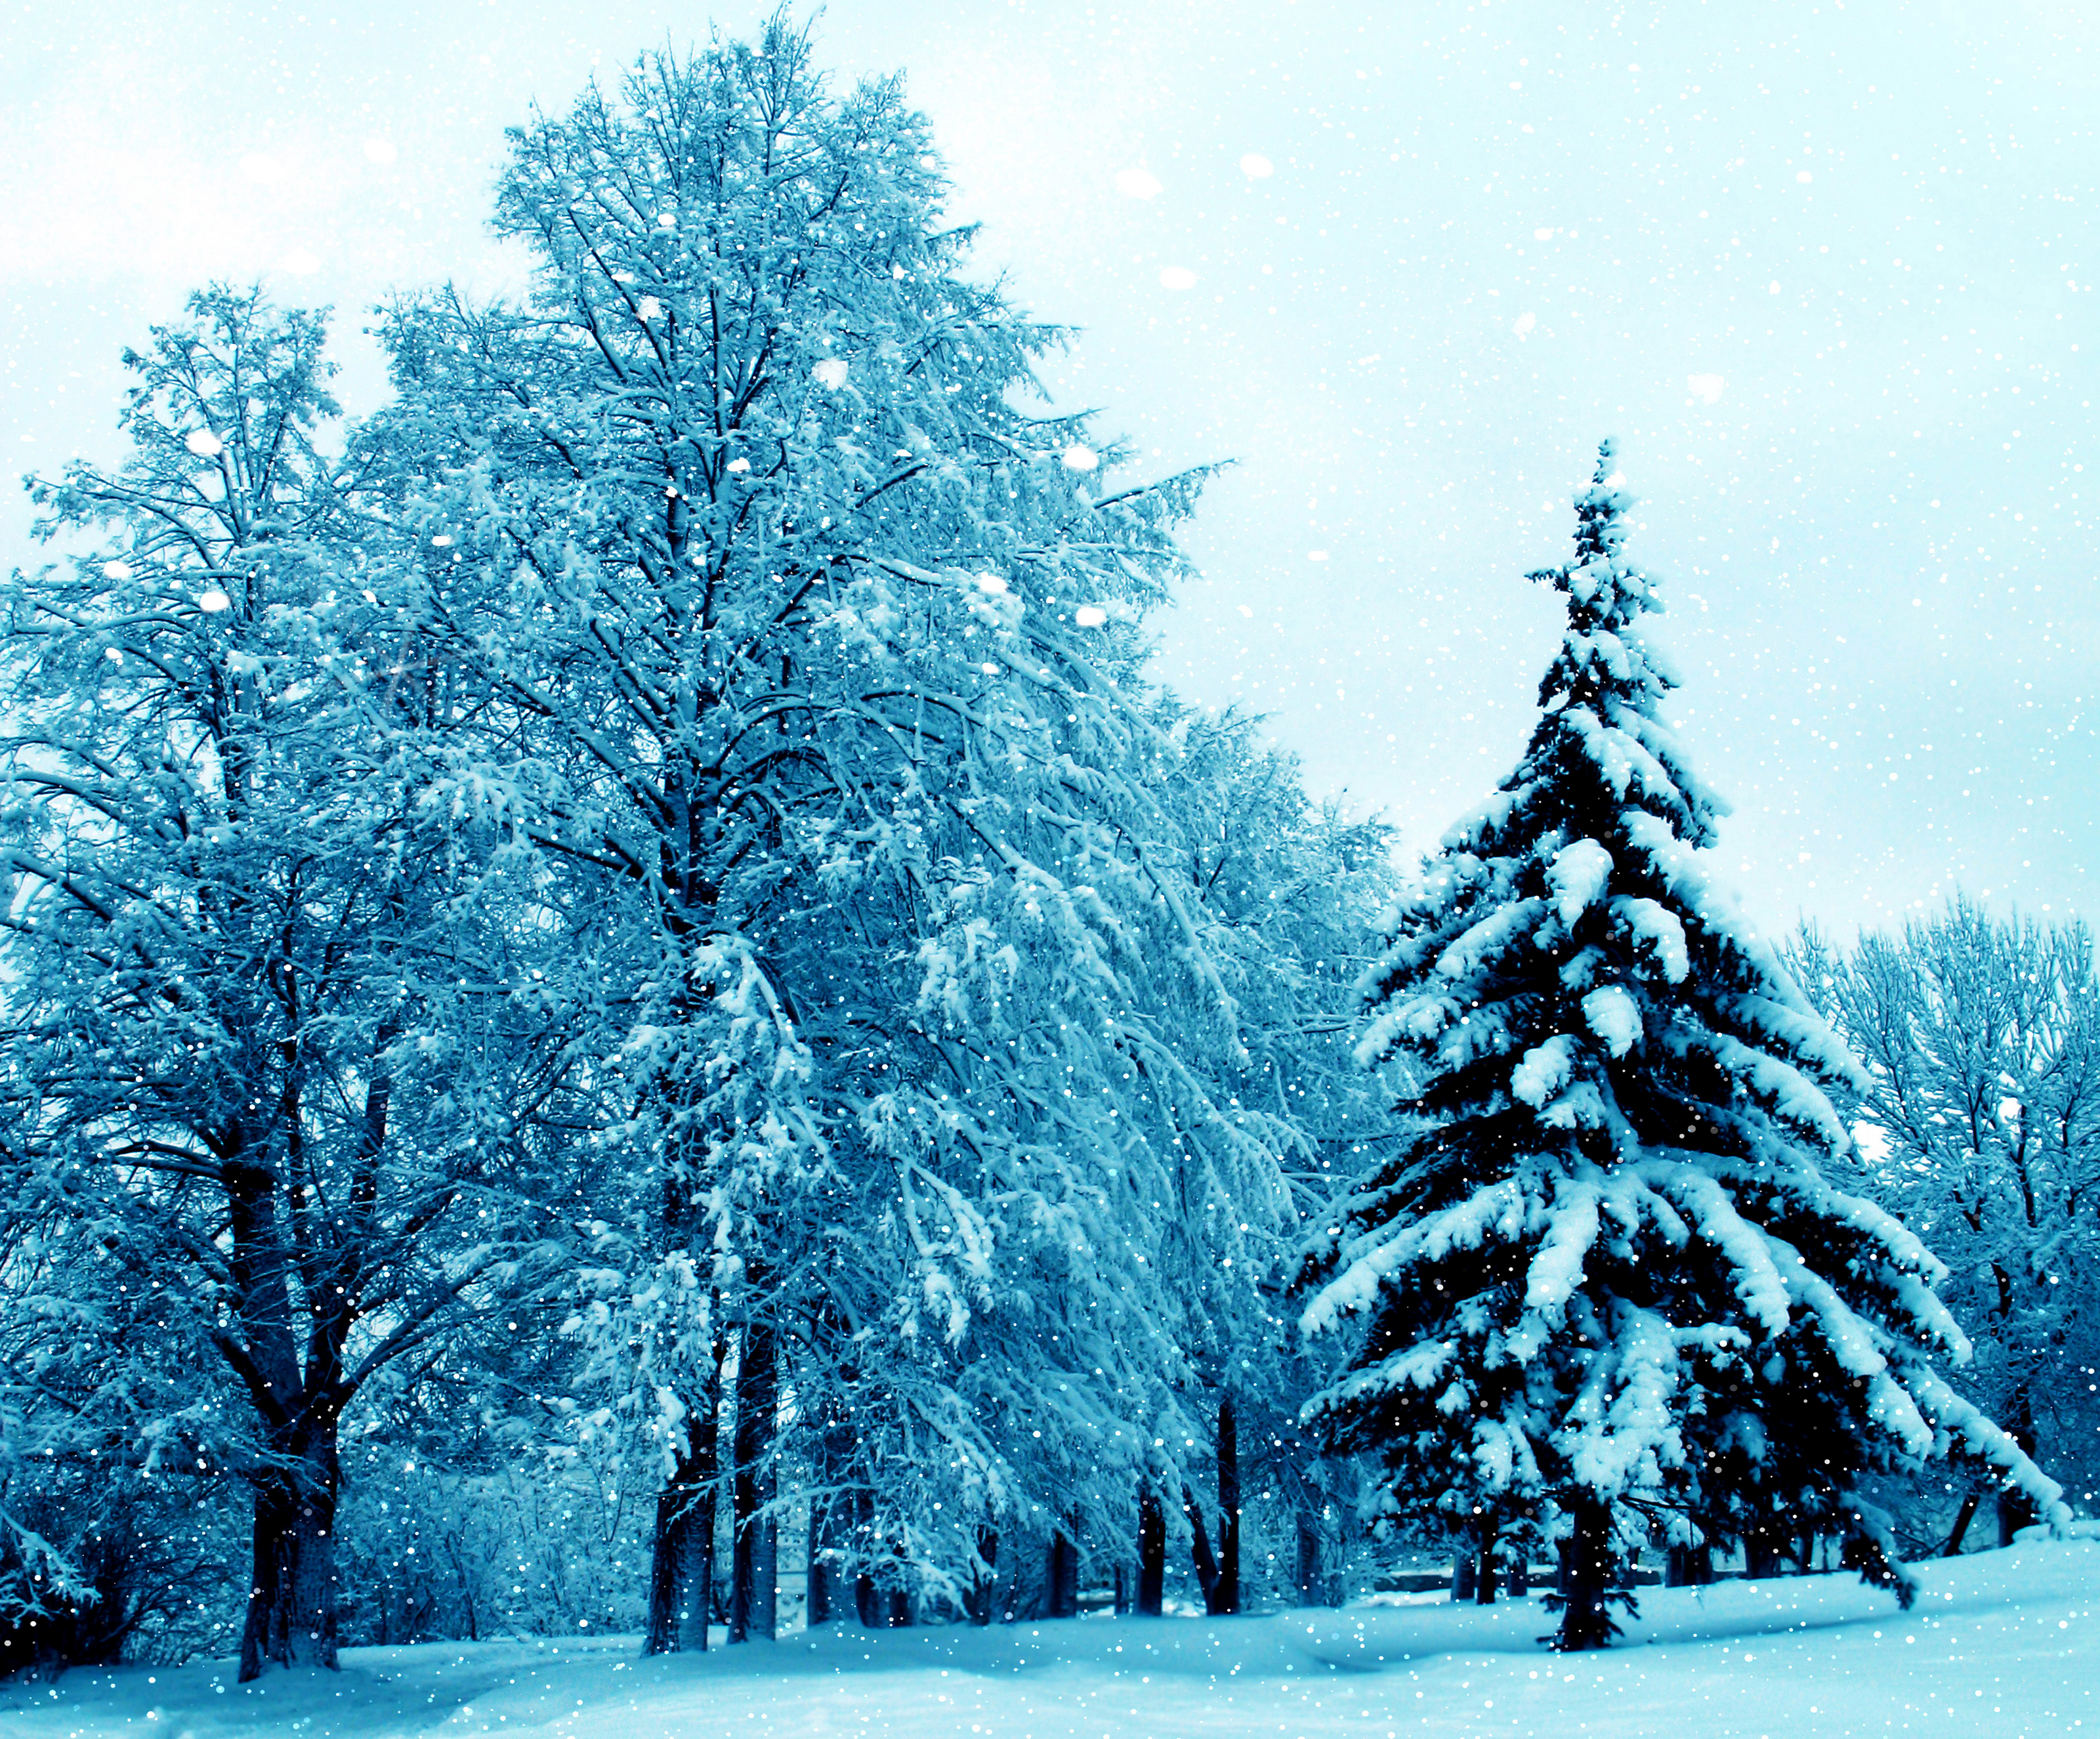 Скачать обои бесплатно Зима, Снег, Парк, Дерево, Снегопад, Земля/природа картинка на рабочий стол ПК